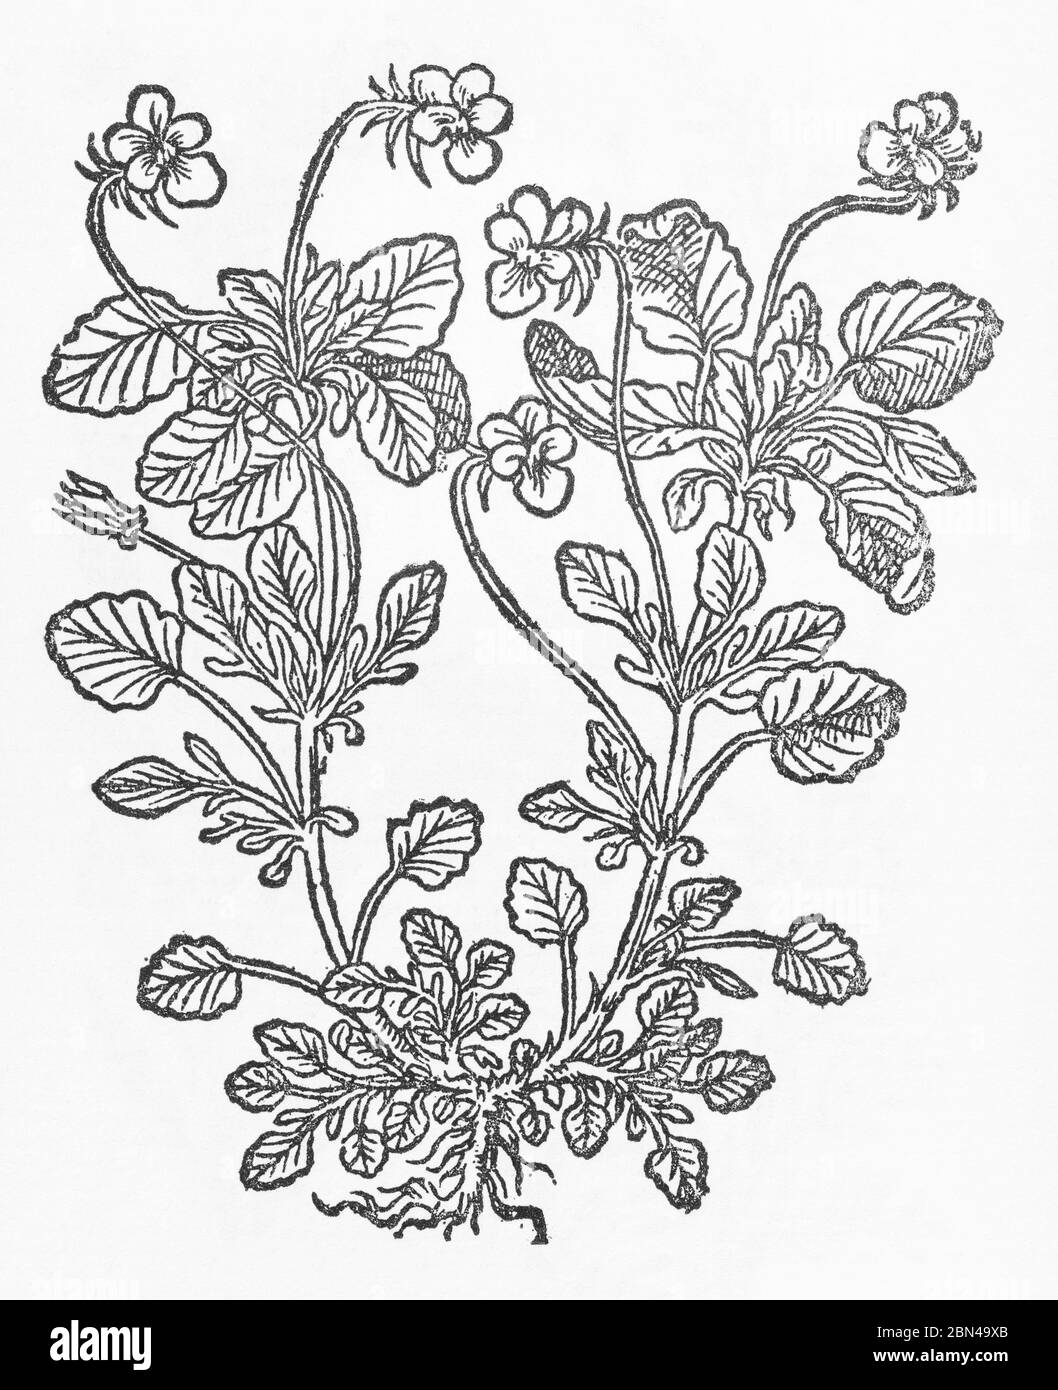 La plante de coeur-Ease a été découpée en bois de Gerarde's Herball, Histoire des plantes. Il le désigne comme Viola tricolor petrarea avec une fleur entièrement jaune. P704 Banque D'Images